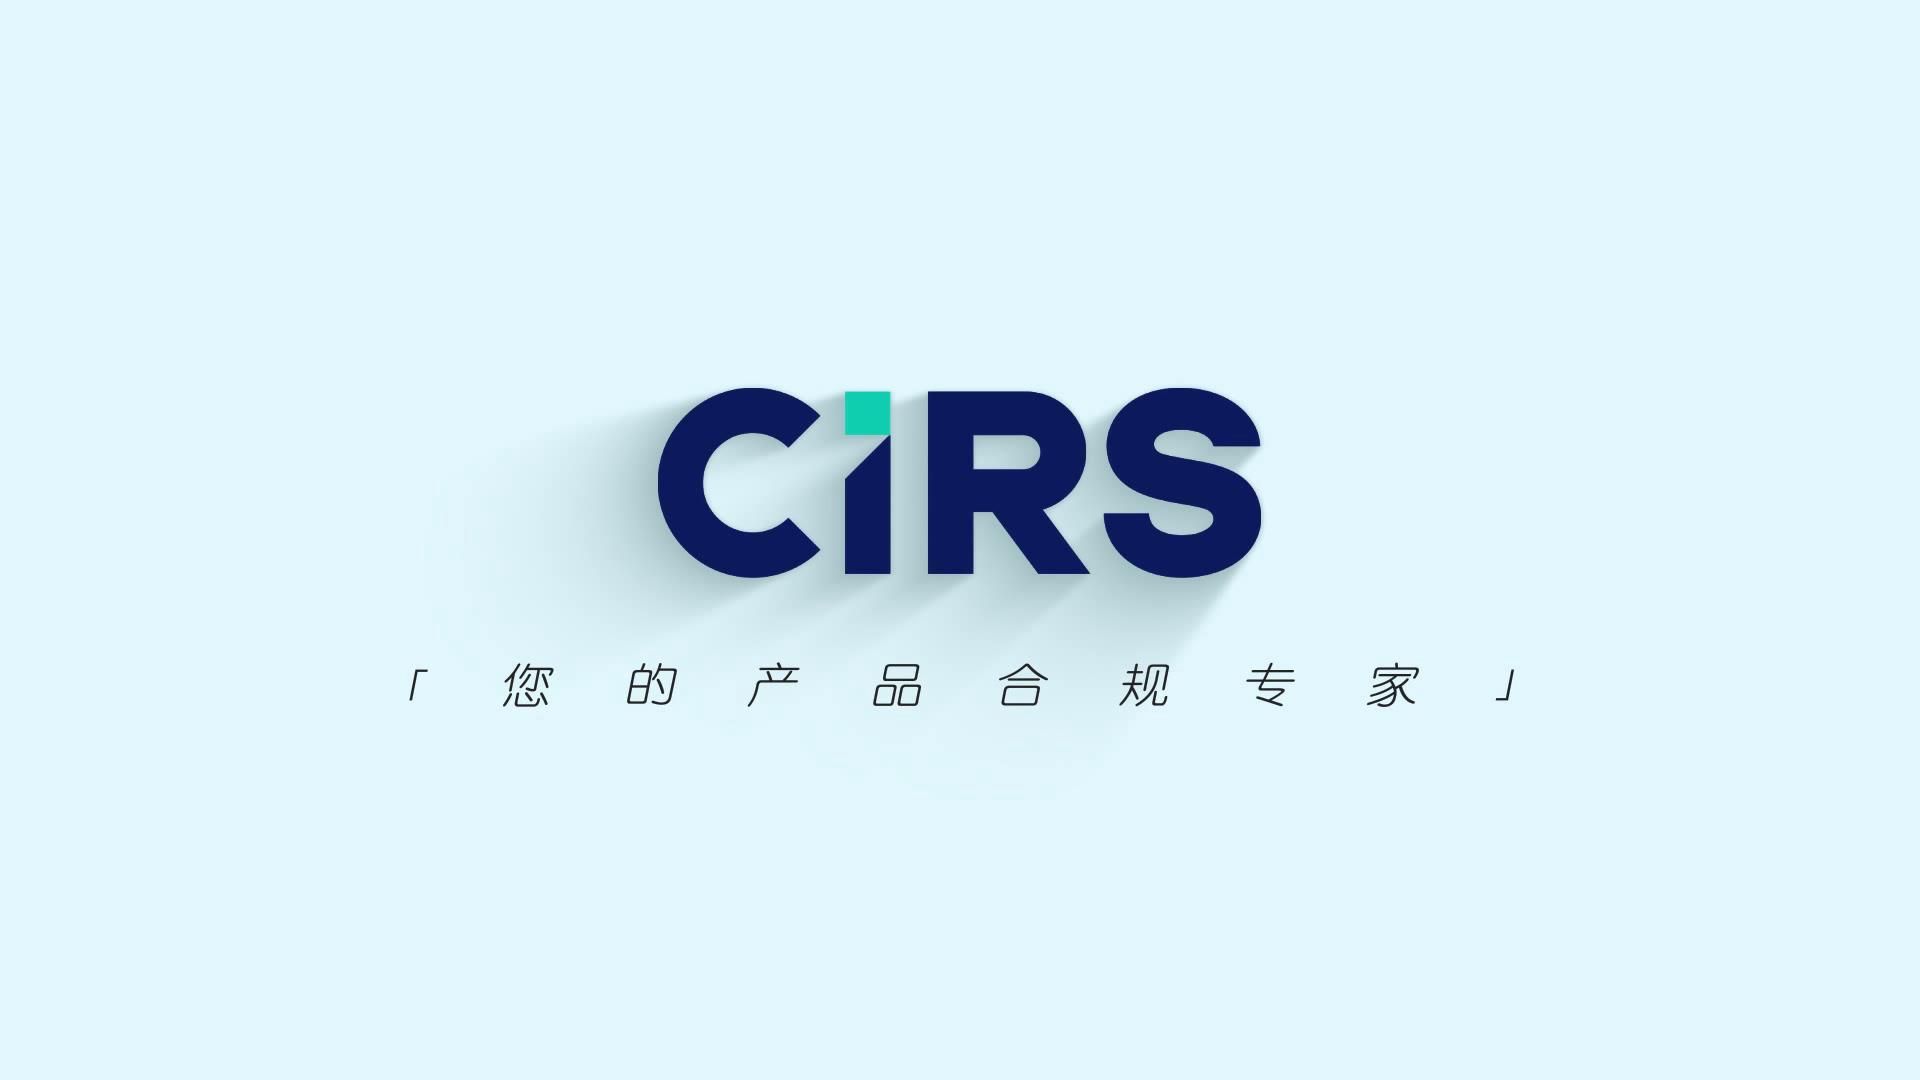 工业化学品- CIRS Group